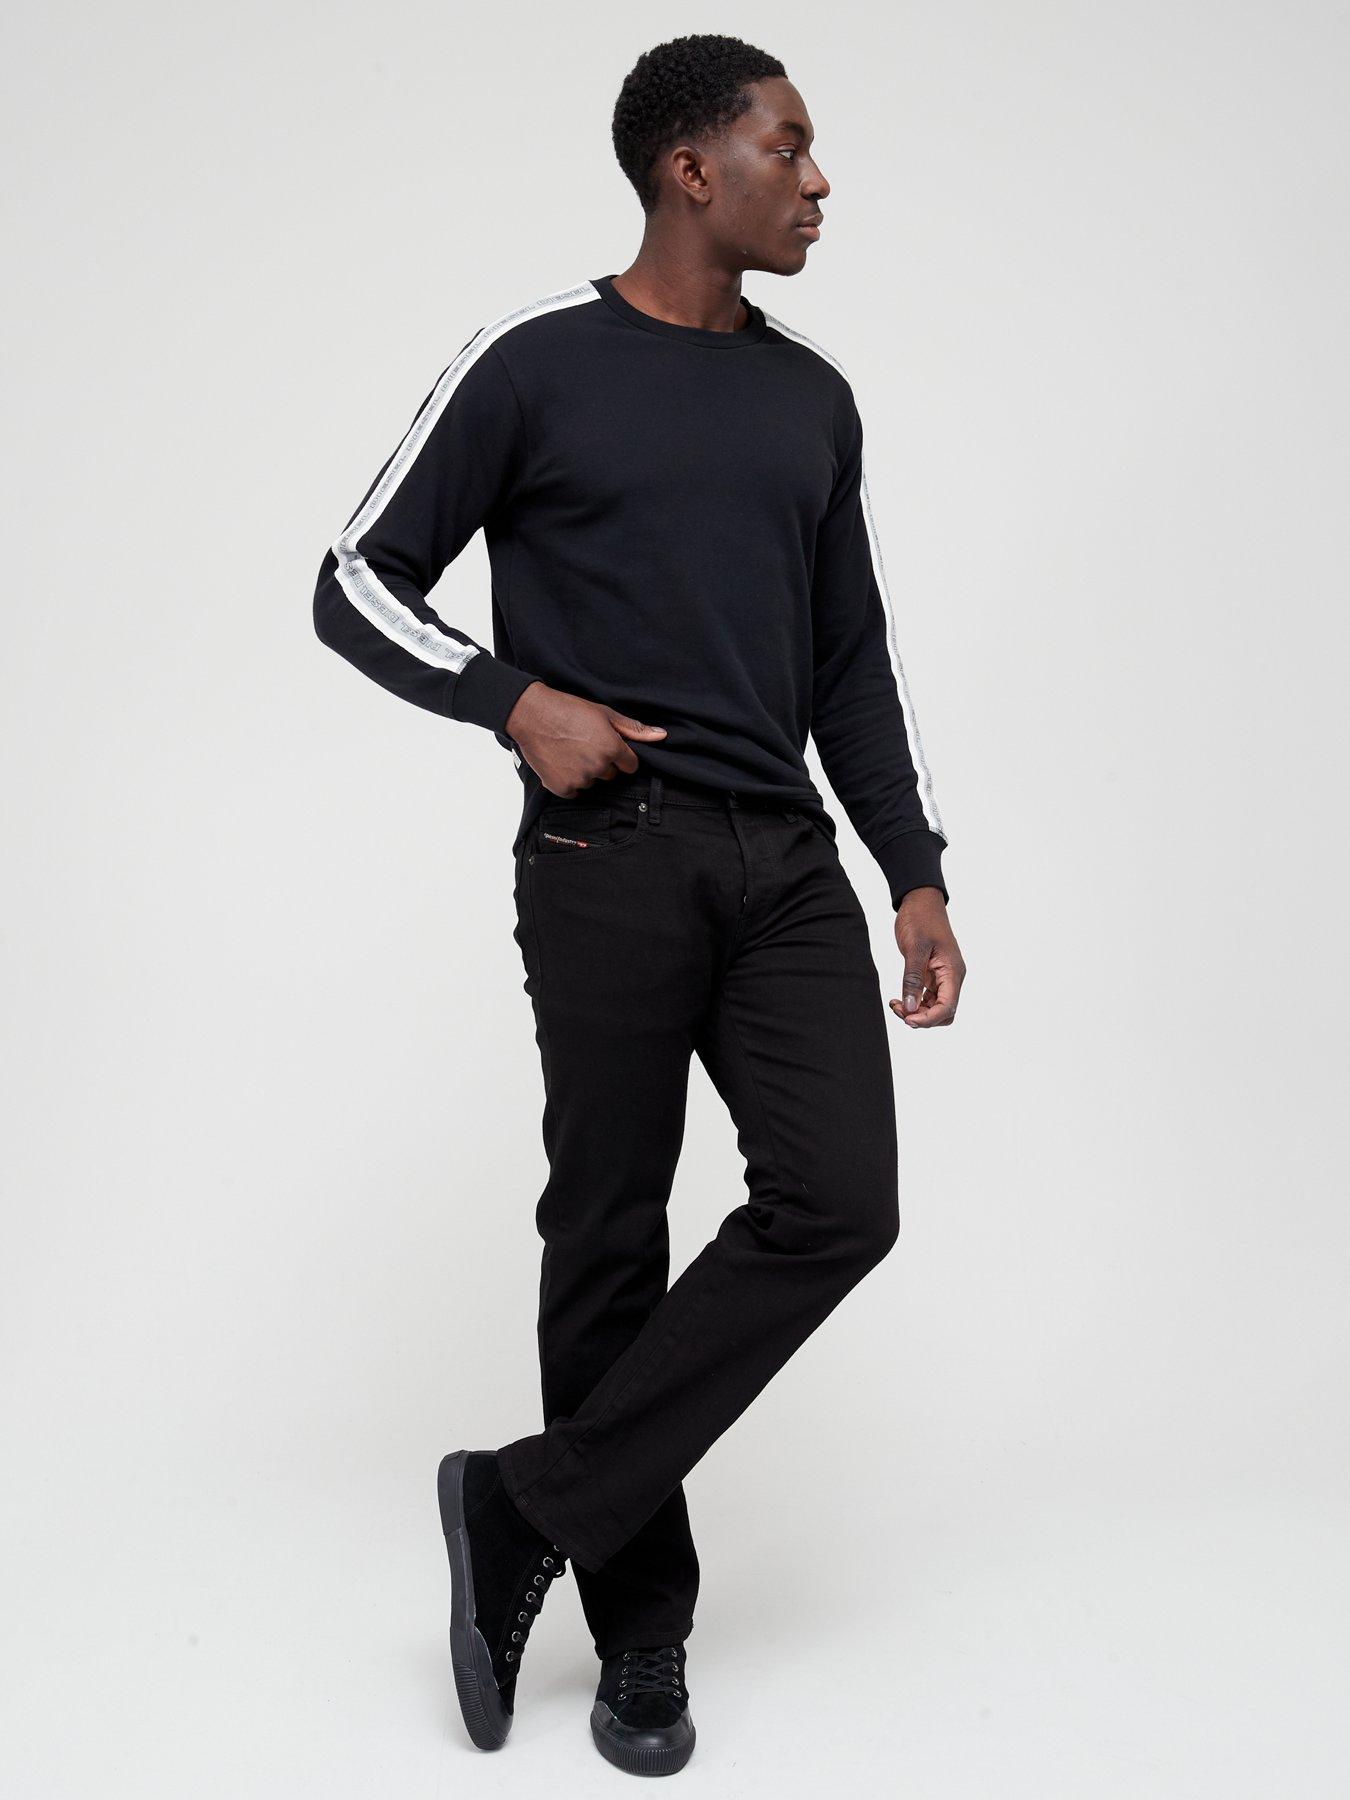 Diesel D-mihtry Straight Jeans, Black, Size 32, Inside Leg Regular, Men